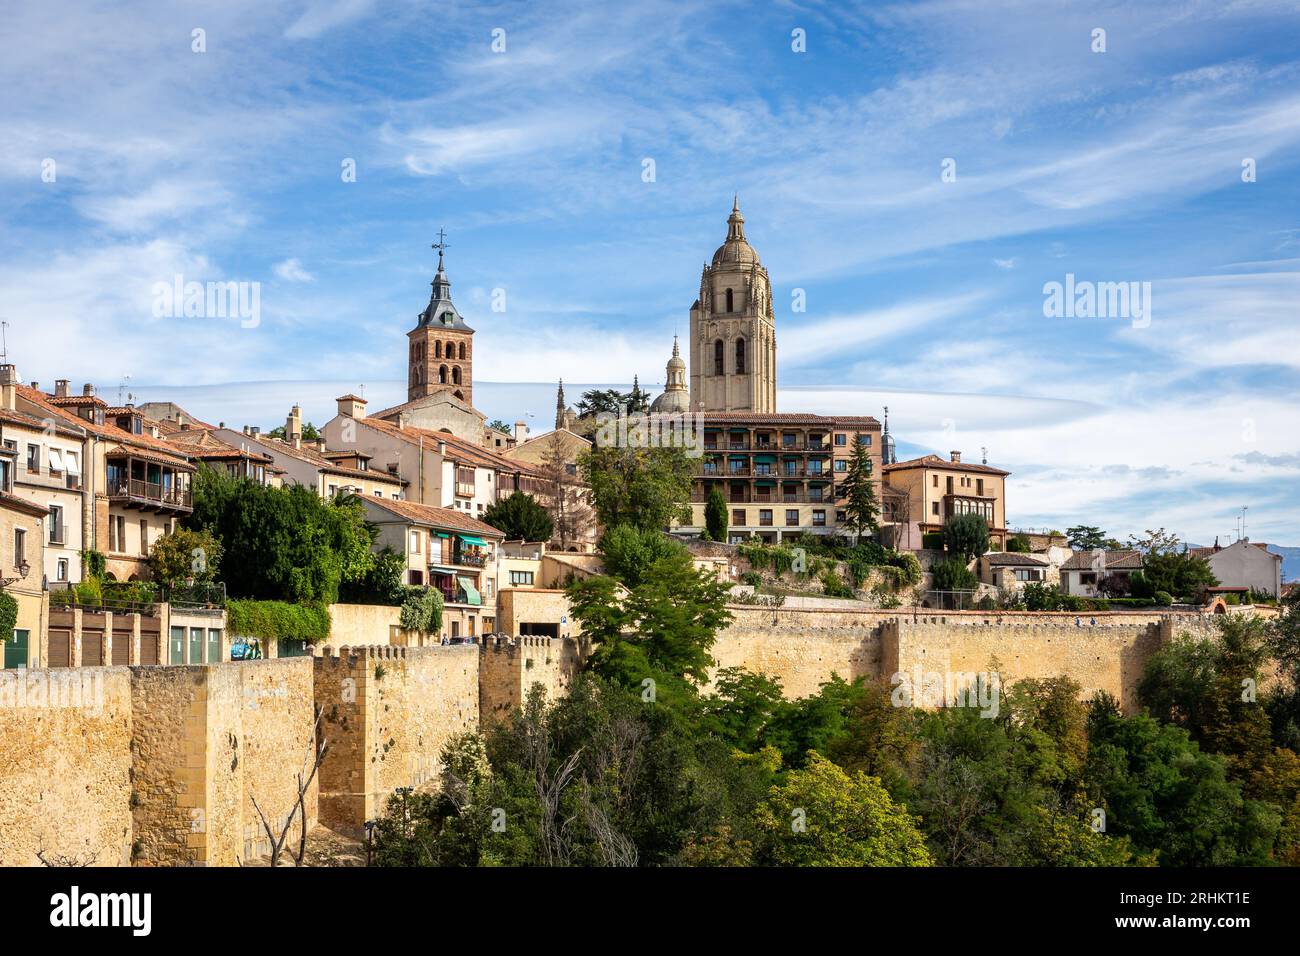 Segovia, Spanien Skyline mit Segovia Kathedrale an der Spitze, Kirchen, mittelalterliche Architektur, Wohngebäude und Stadtmauern. Stockfoto